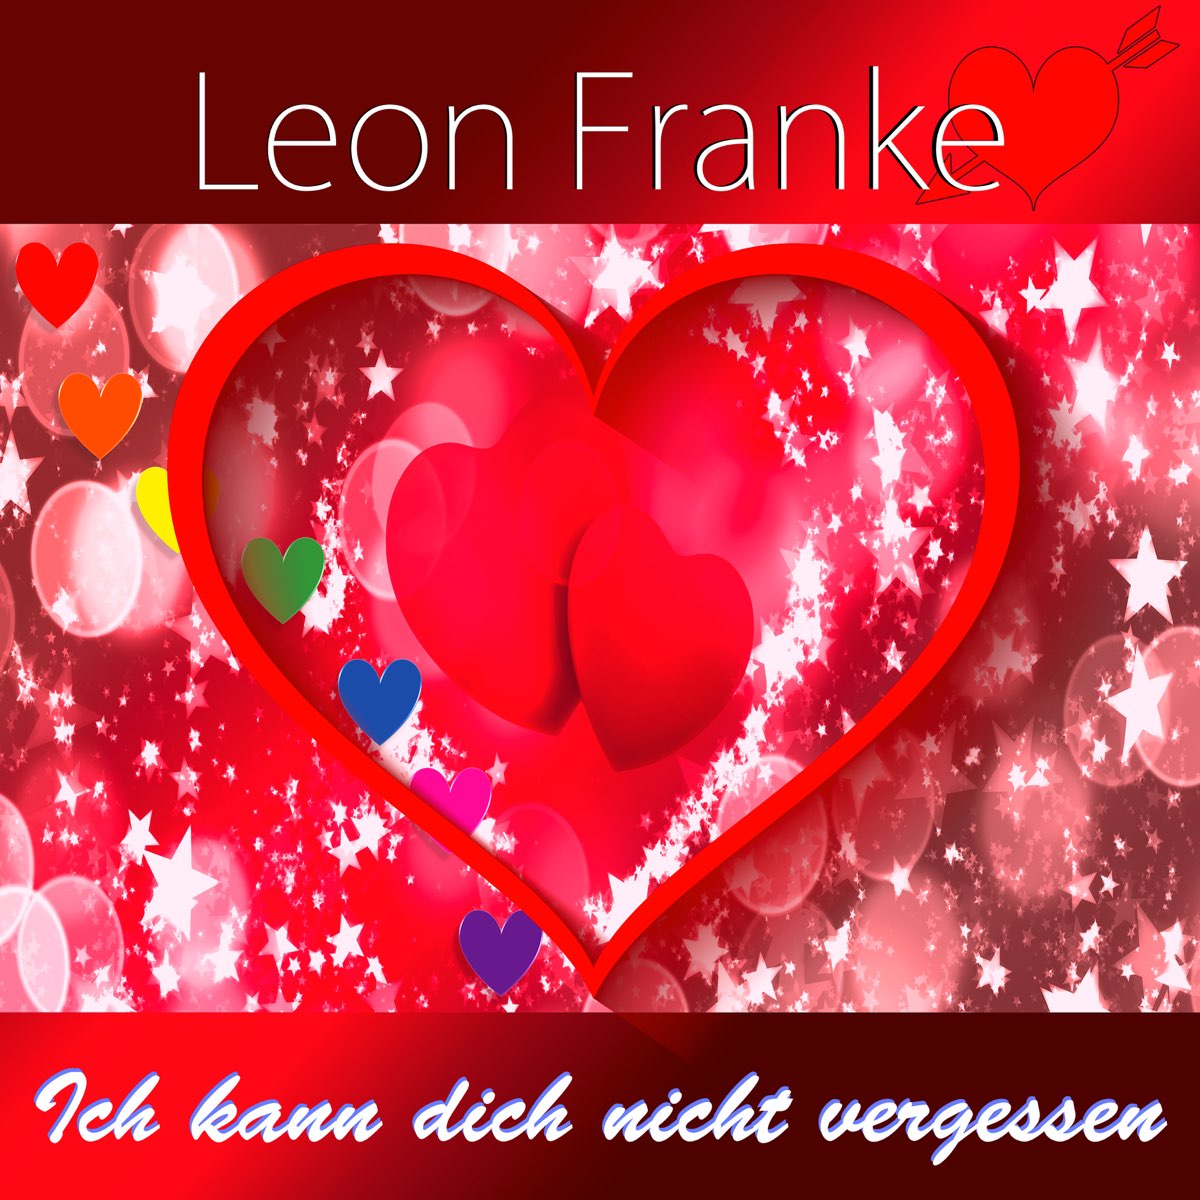 Ich kann dich nicht vergessen - Single by Leon Franke on Apple Music